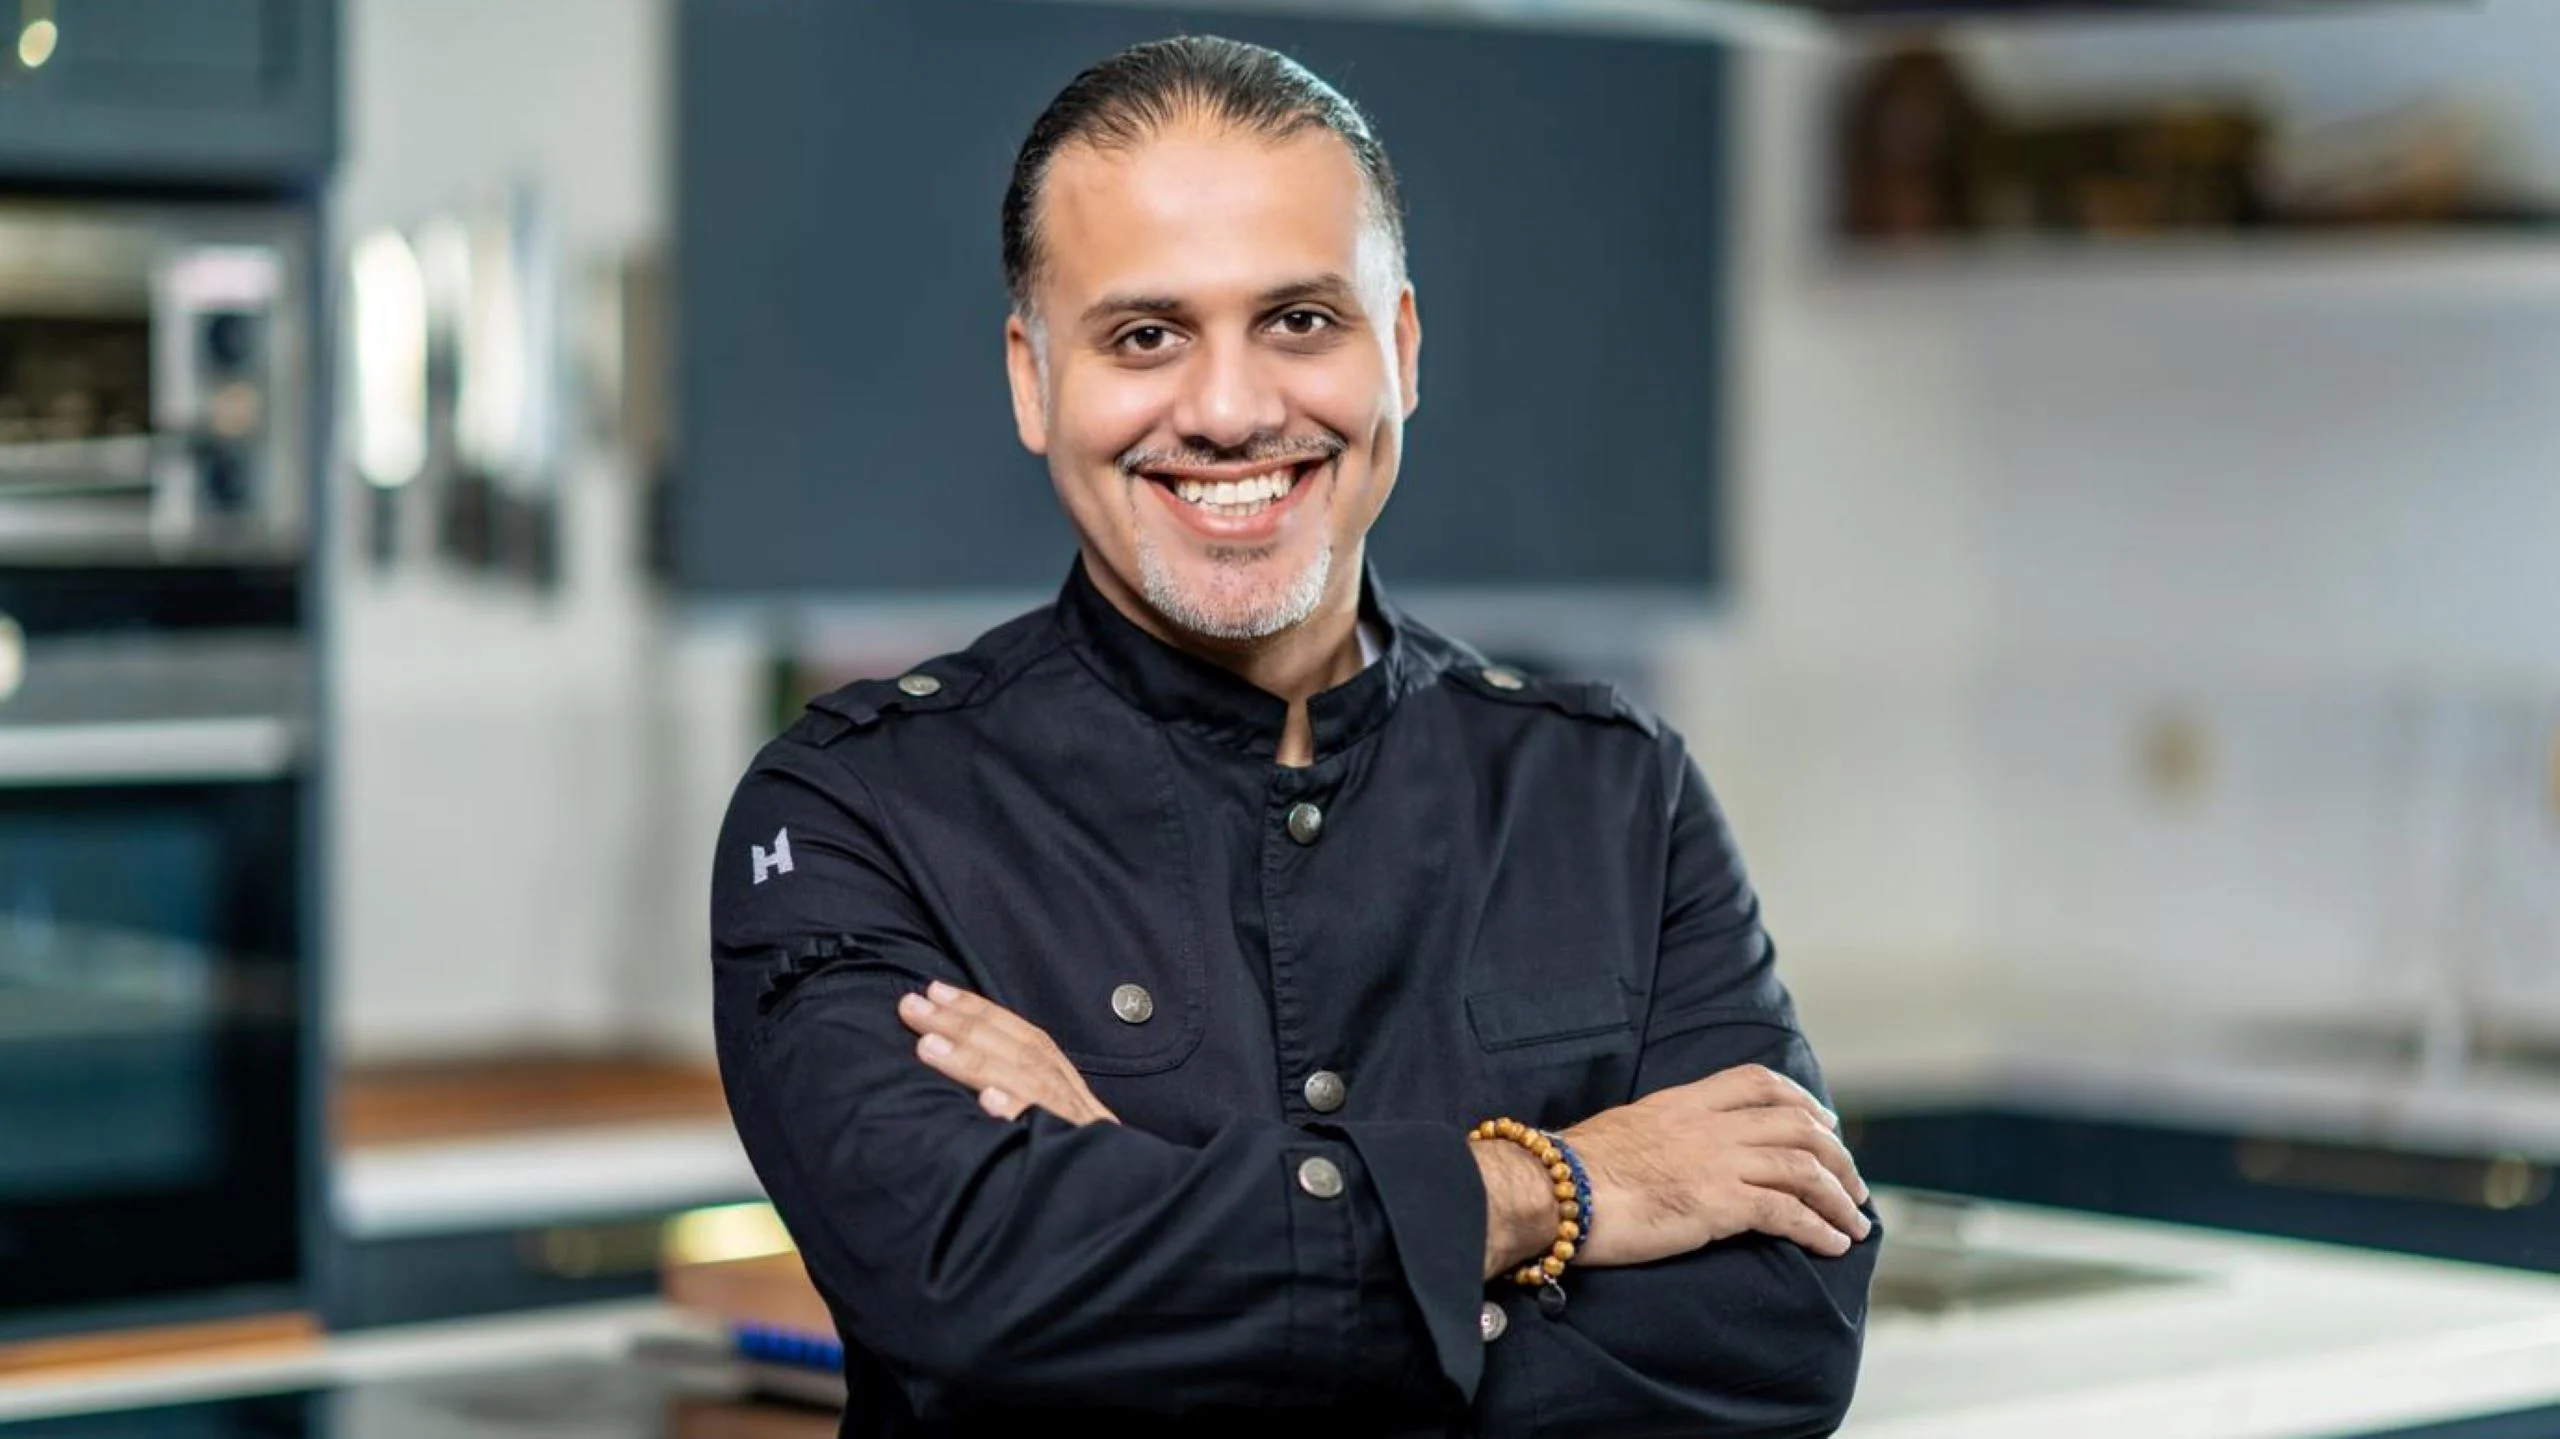 El chef Faisal Ahmed Aldeleigan nos comparte la receta de su smoothie Infinity: cremoso y delicioso